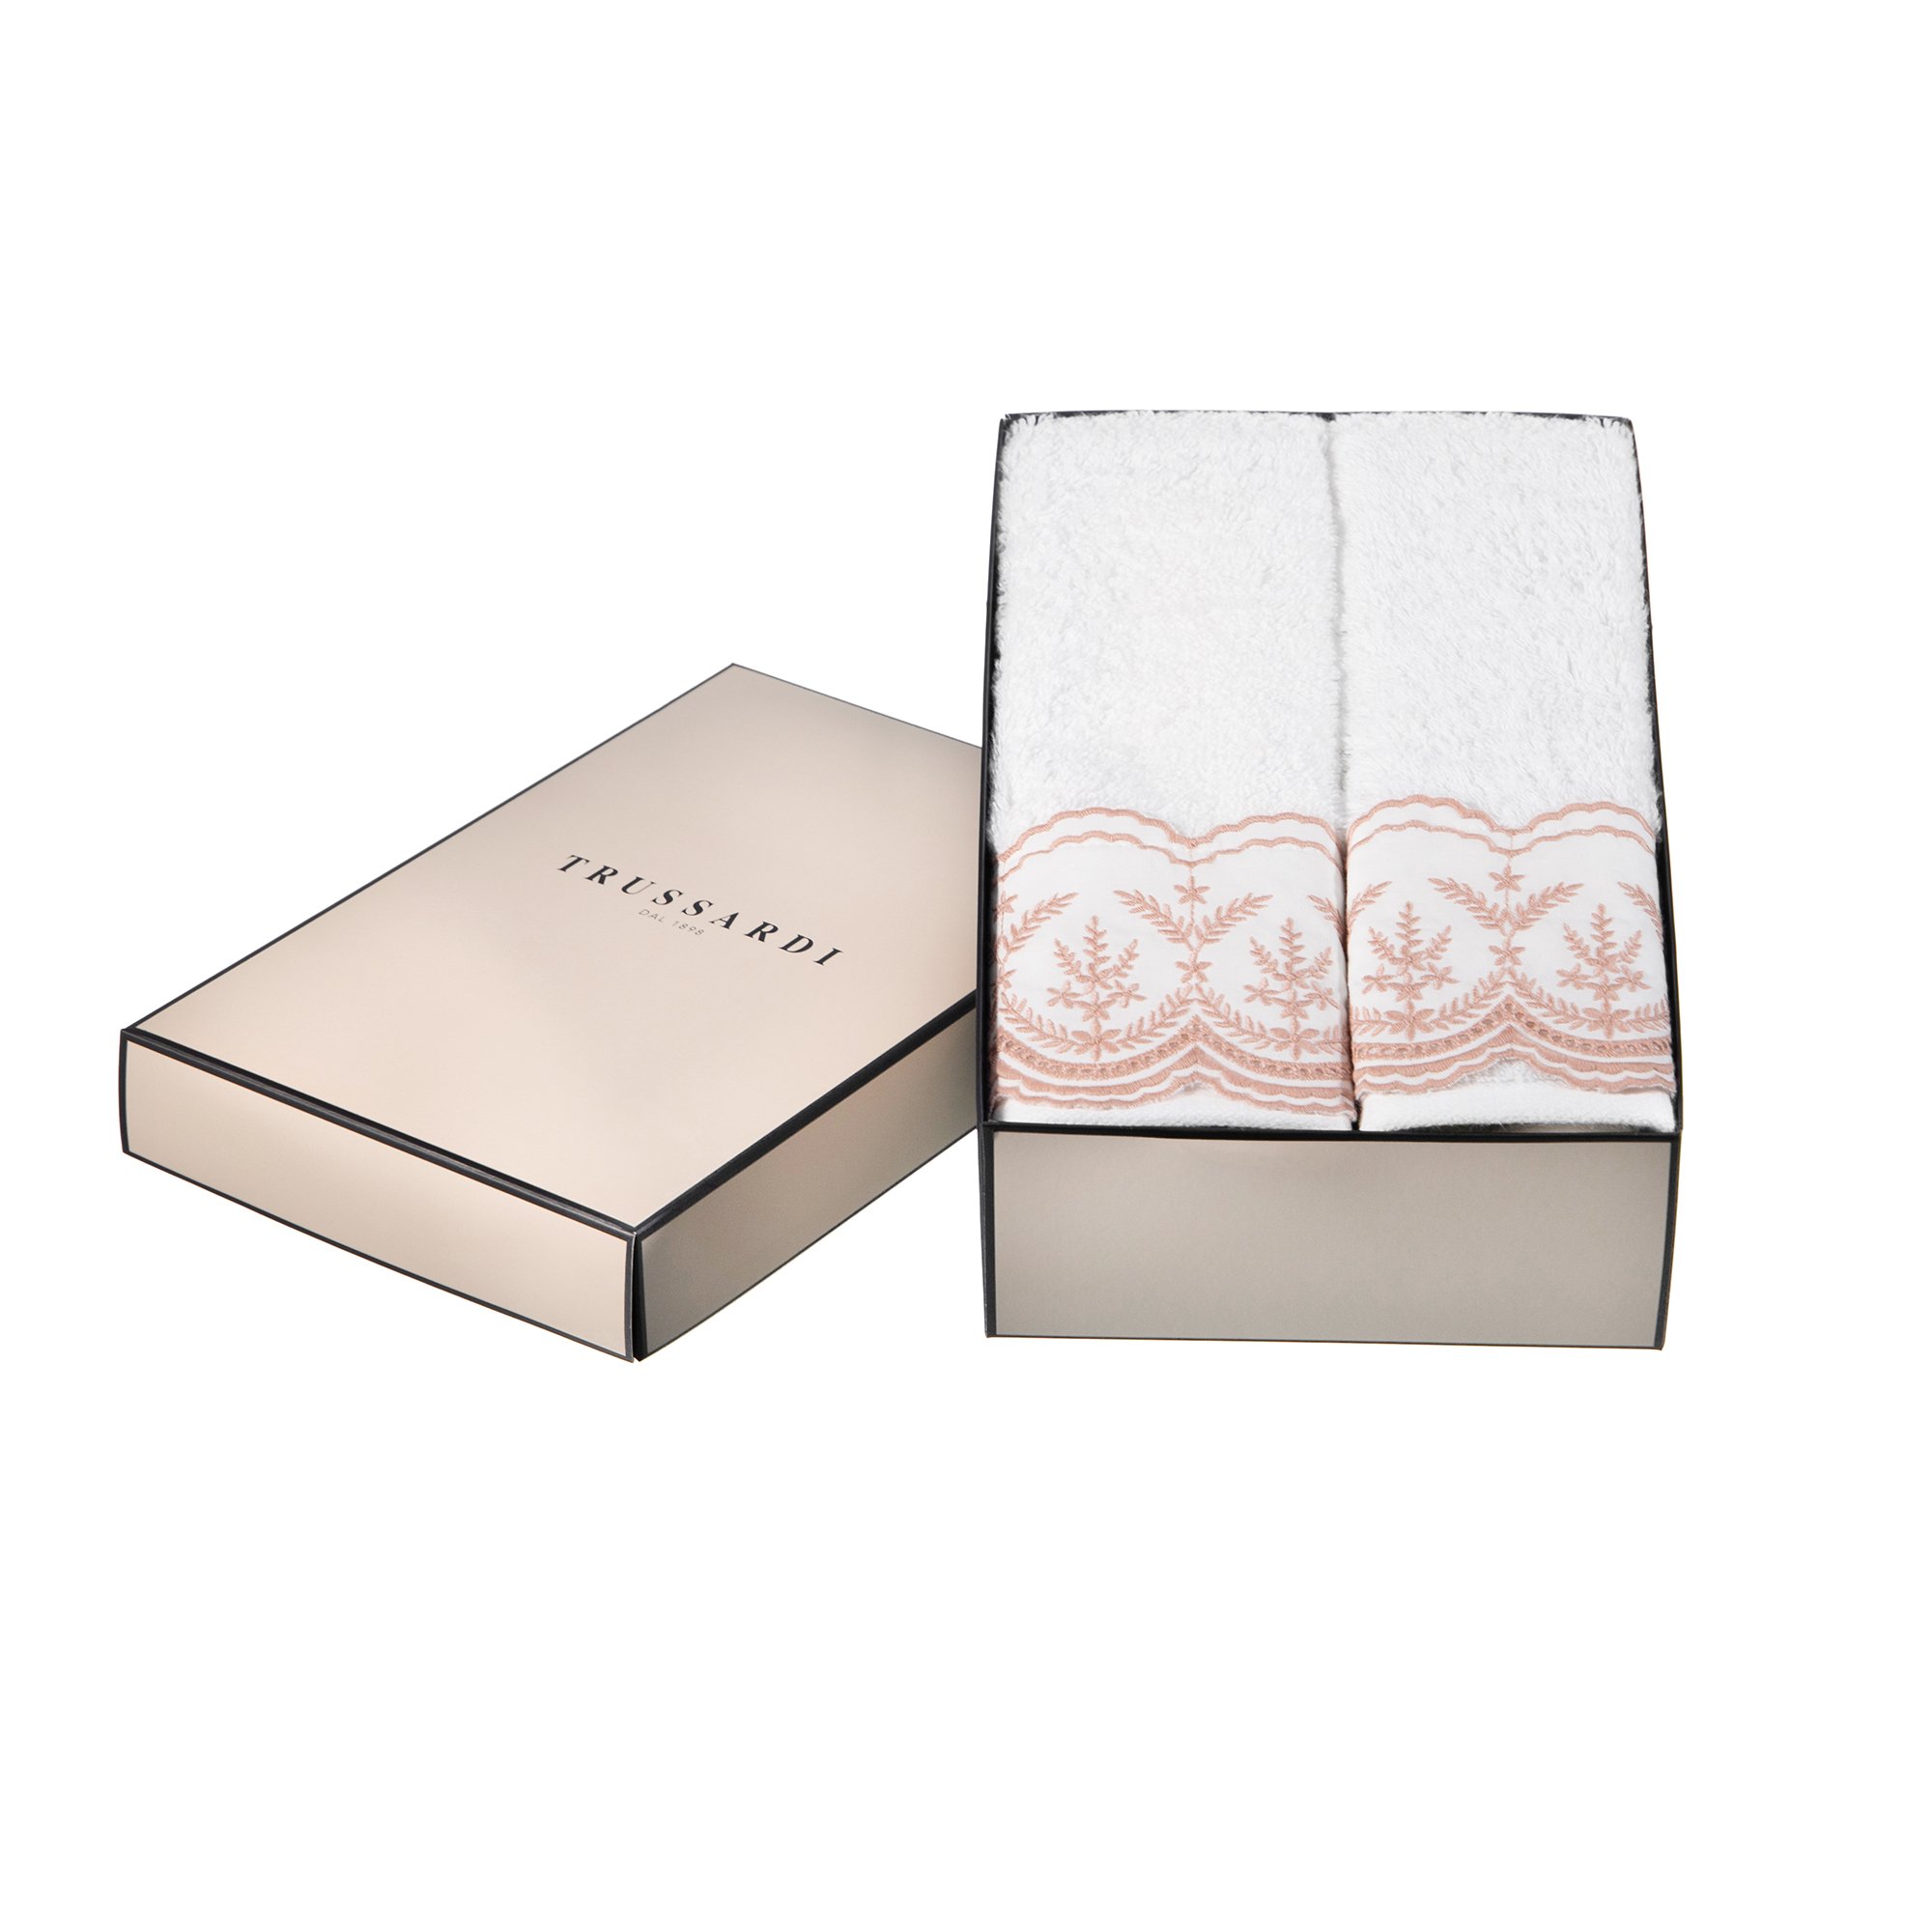 jogo de 2 toalhas de lavabo trussardi 100 algodao imperiale bordado c caixa de presente soft rose